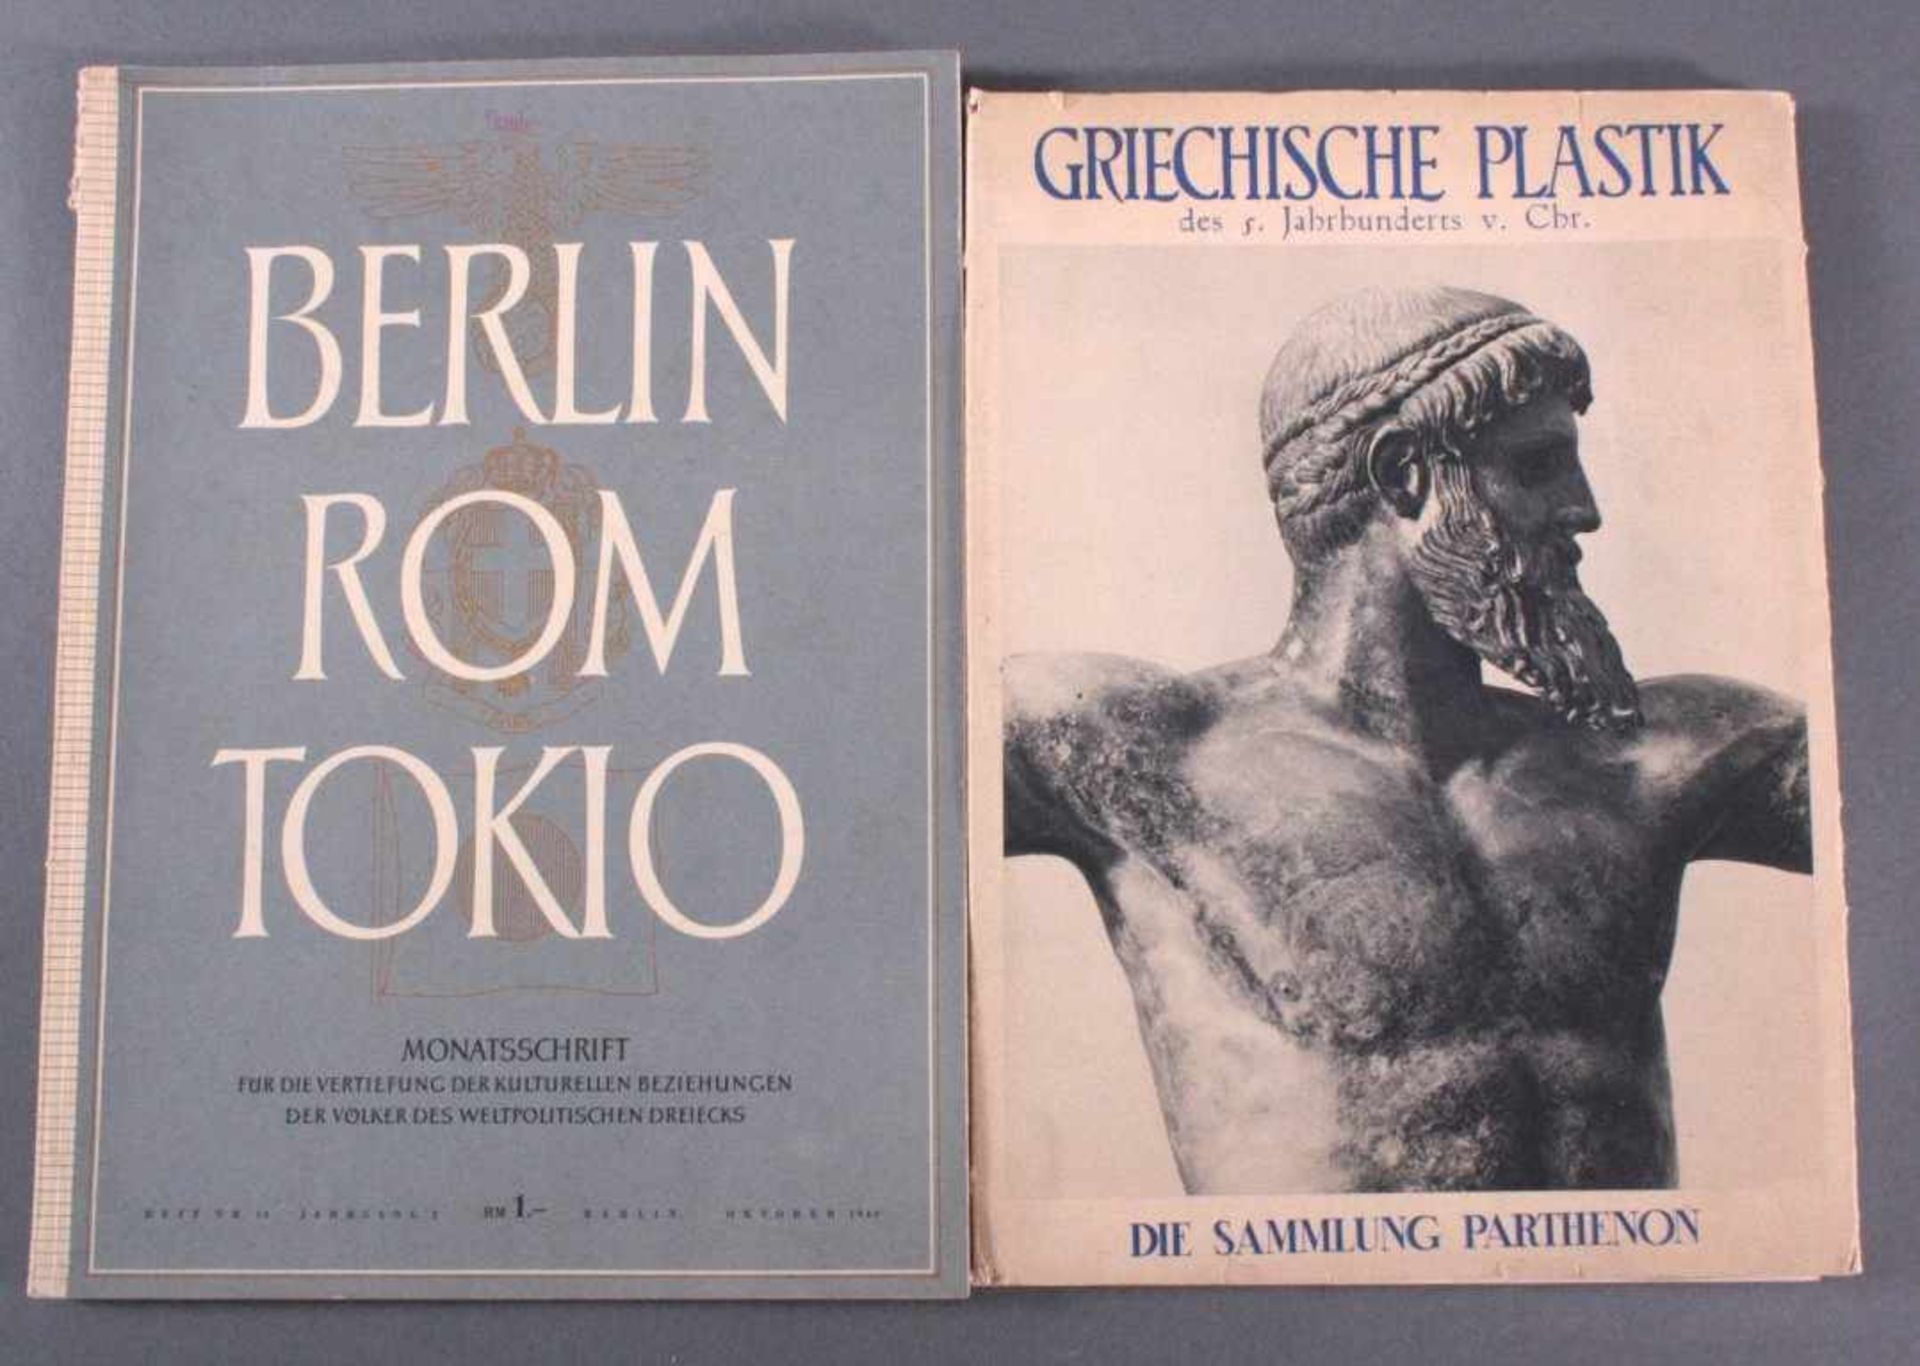 Monatsschrift und Kunstmappe1 Monatsschrift BERLIN ROM TOKYO, Oktober 1940.Die Sammlung Parthenon,